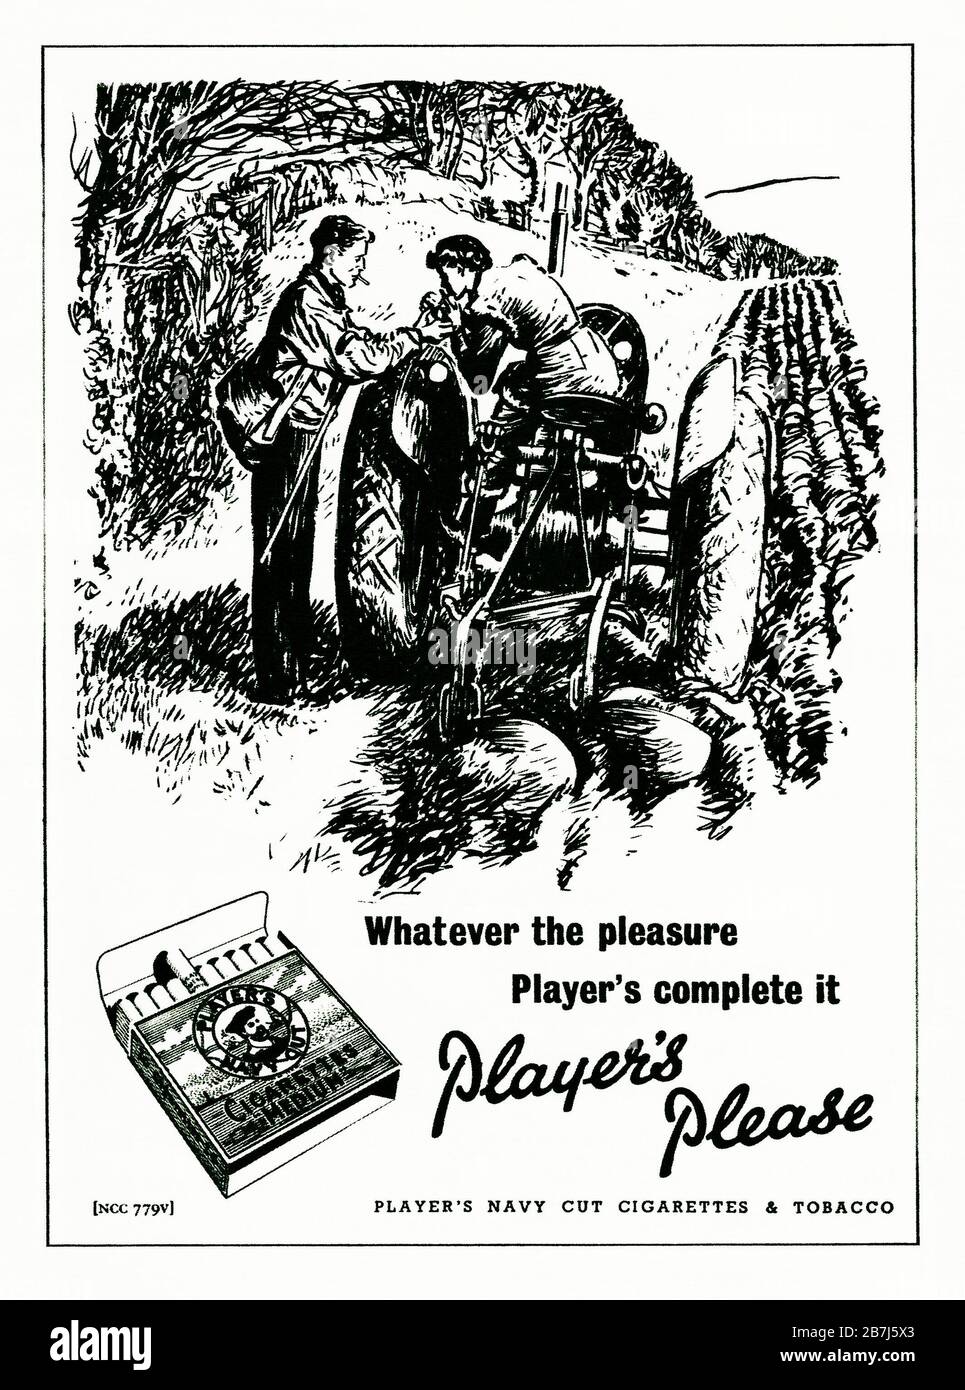 Une publicité des années 1950 pour les cigarettes « de moyenne » de la Marine du joueur. La publicité a été publiée dans un magazine publié au Royaume-Uni en février 1952. L'illustration montre une fille sur un tracteur et les mots soulignent le plaisir de fumer et la célèbre phrase de passe 'Player's Please'. La boîte des cigarettes a présenté la célèbre image de marin au centre du design - avec le mot « Héros » sur sa casquette. John Player and Sons, basé à Nottingham, fait partie de Imperial Tobacco en 1901. Banque D'Images